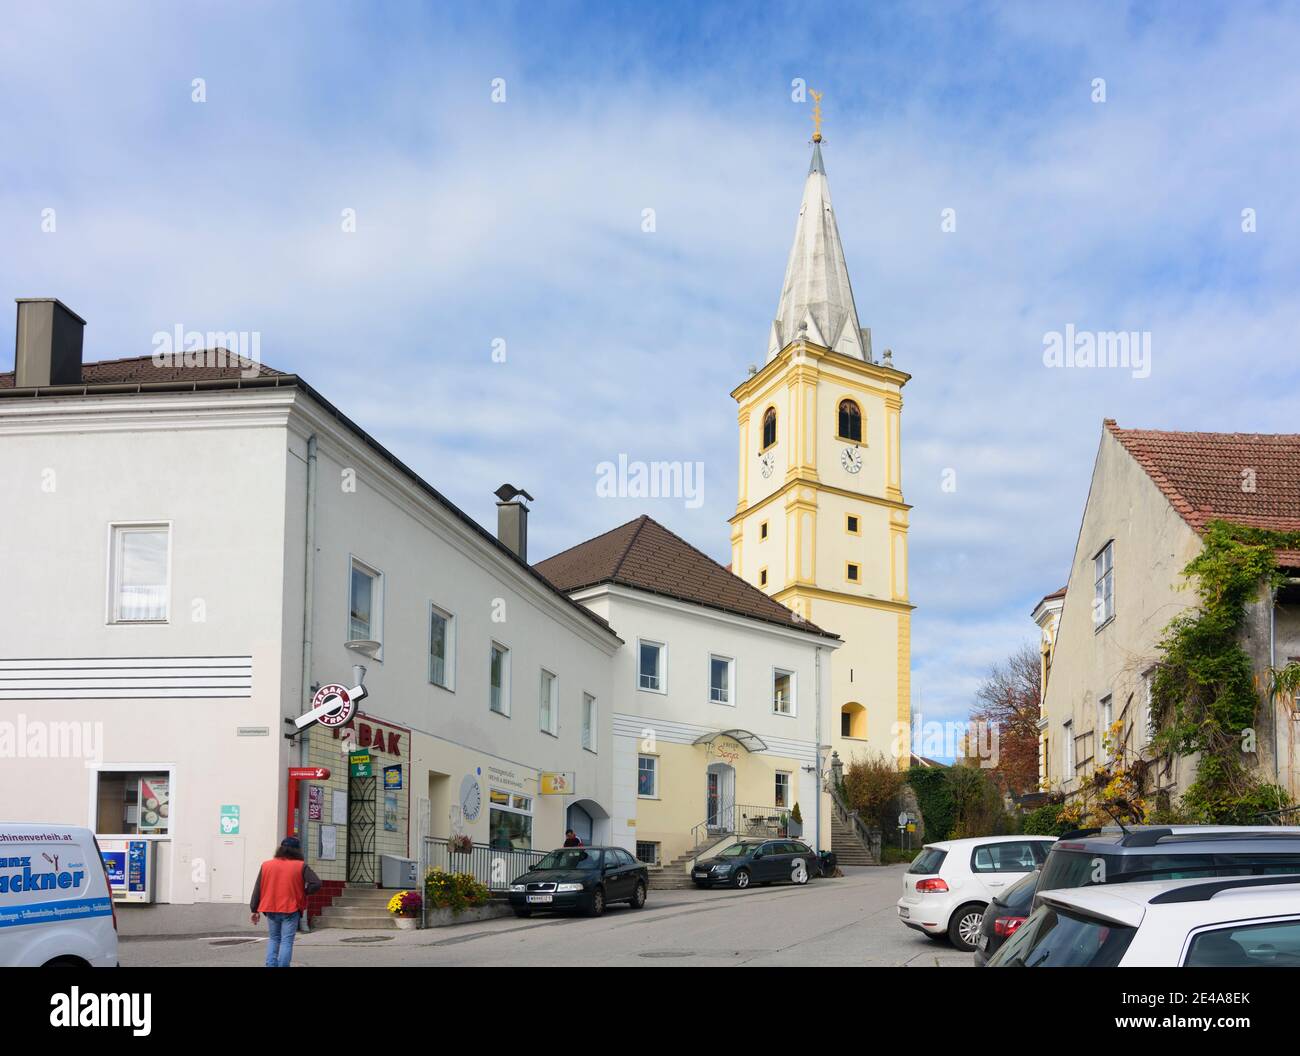 Krumbach, church St. Stephan in Krumbach, Wiener Alpen, Alps, Niederösterreich / Lower Austria, Austria Stock Photo